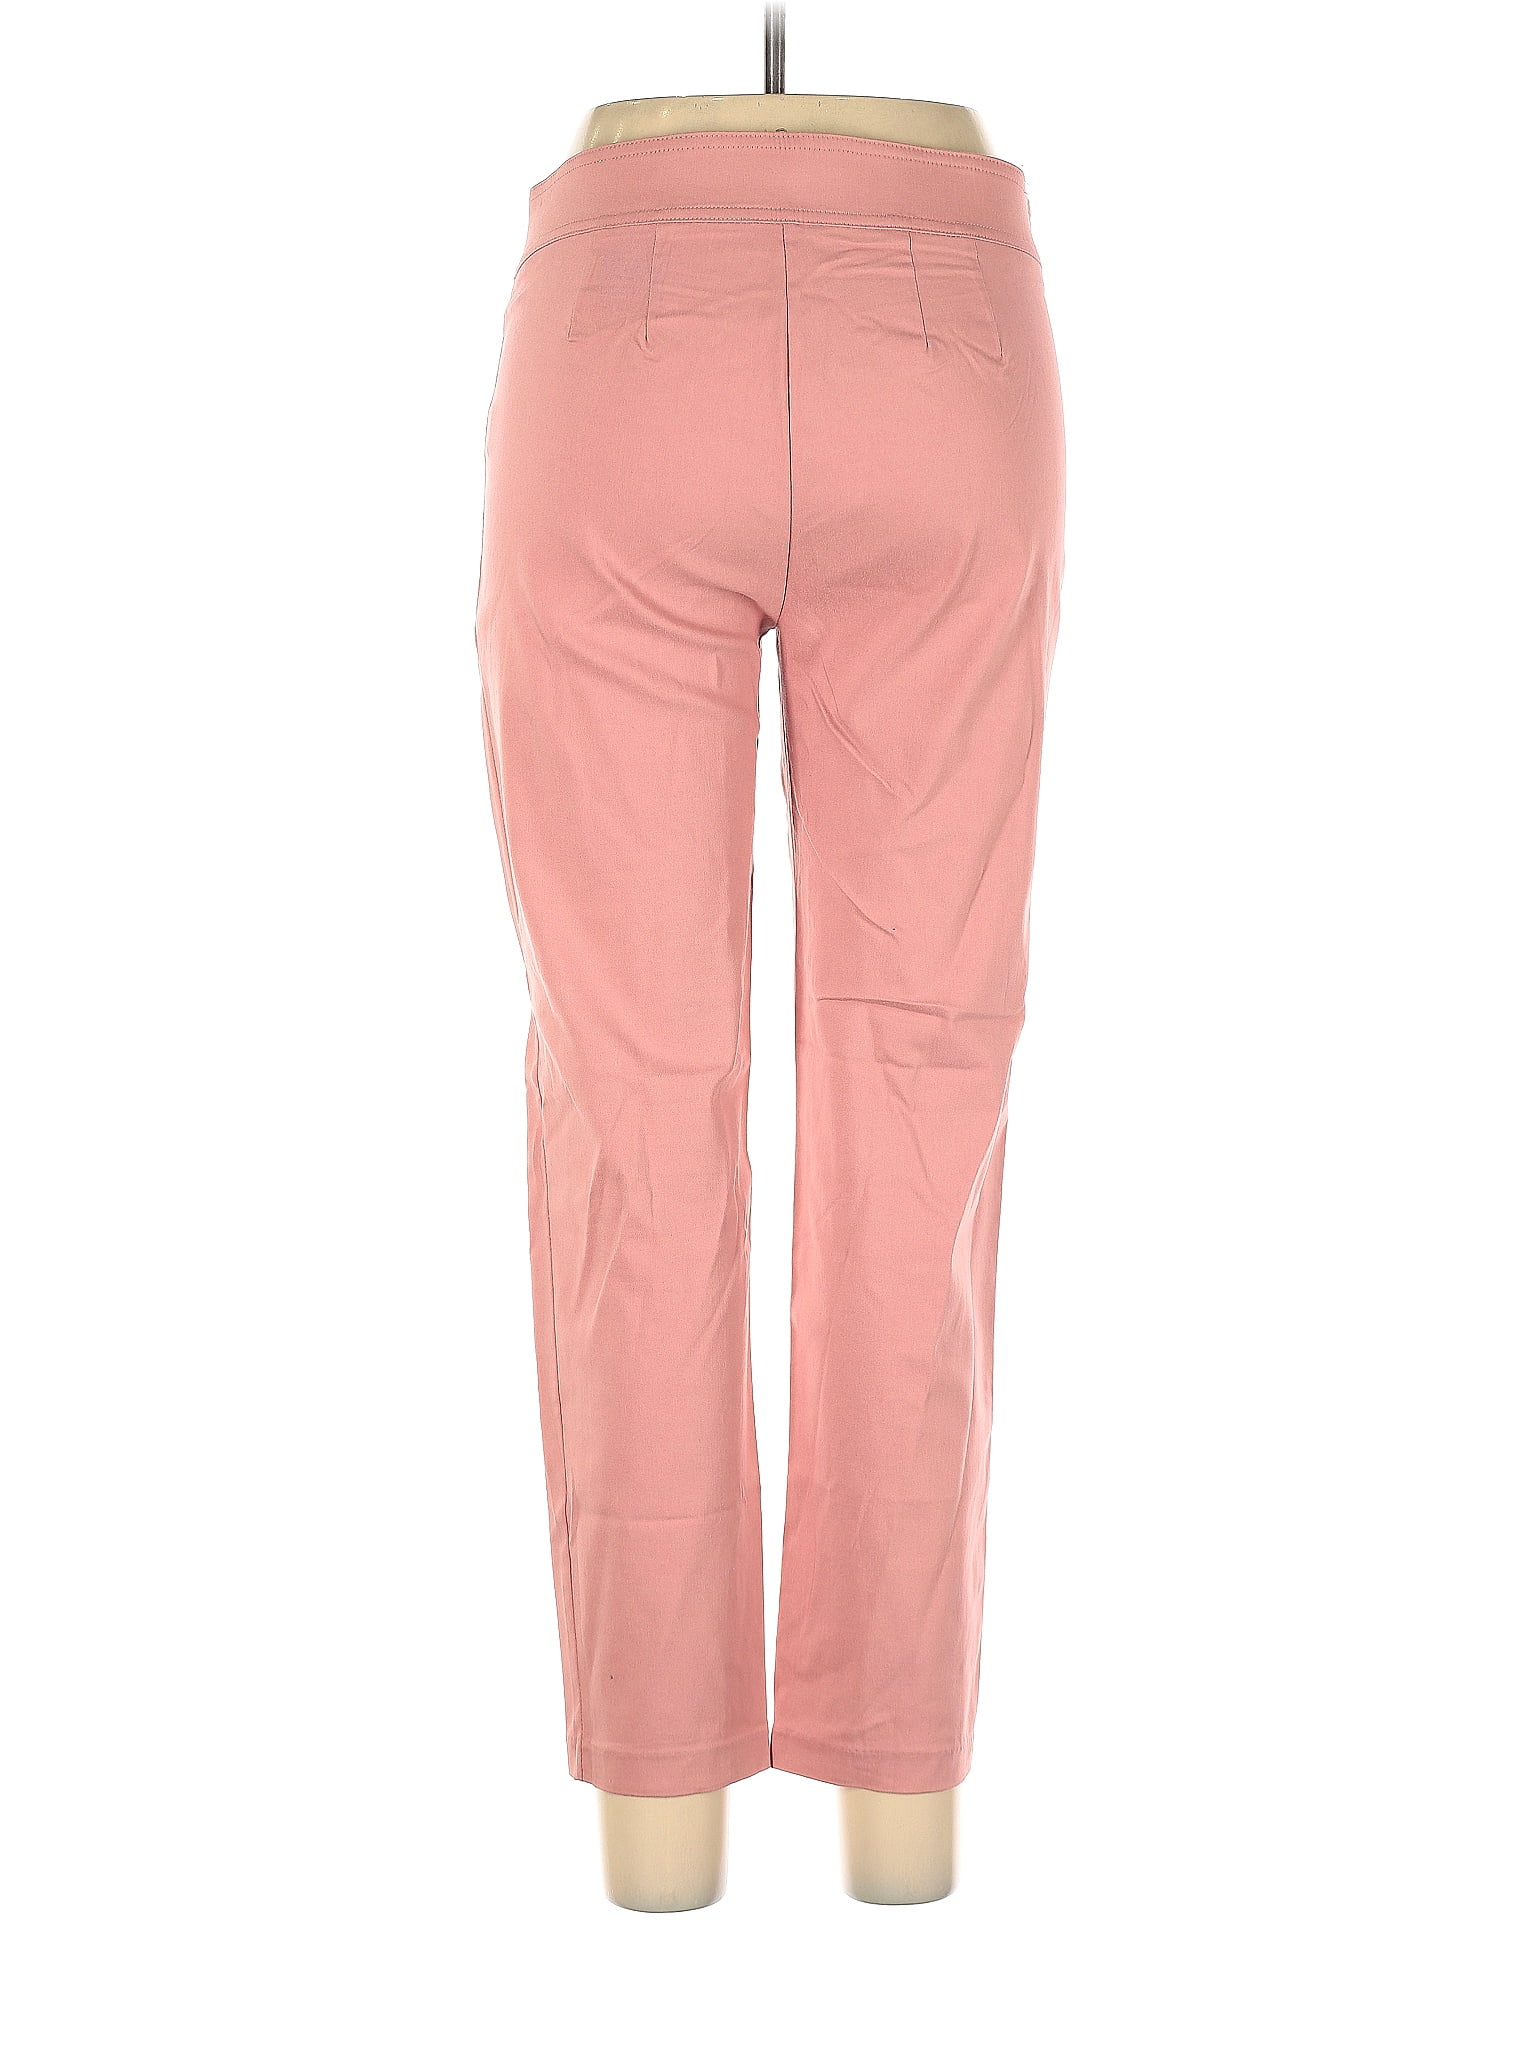 Love Scarlett Pink Dress Pants Size 10 - 72% off